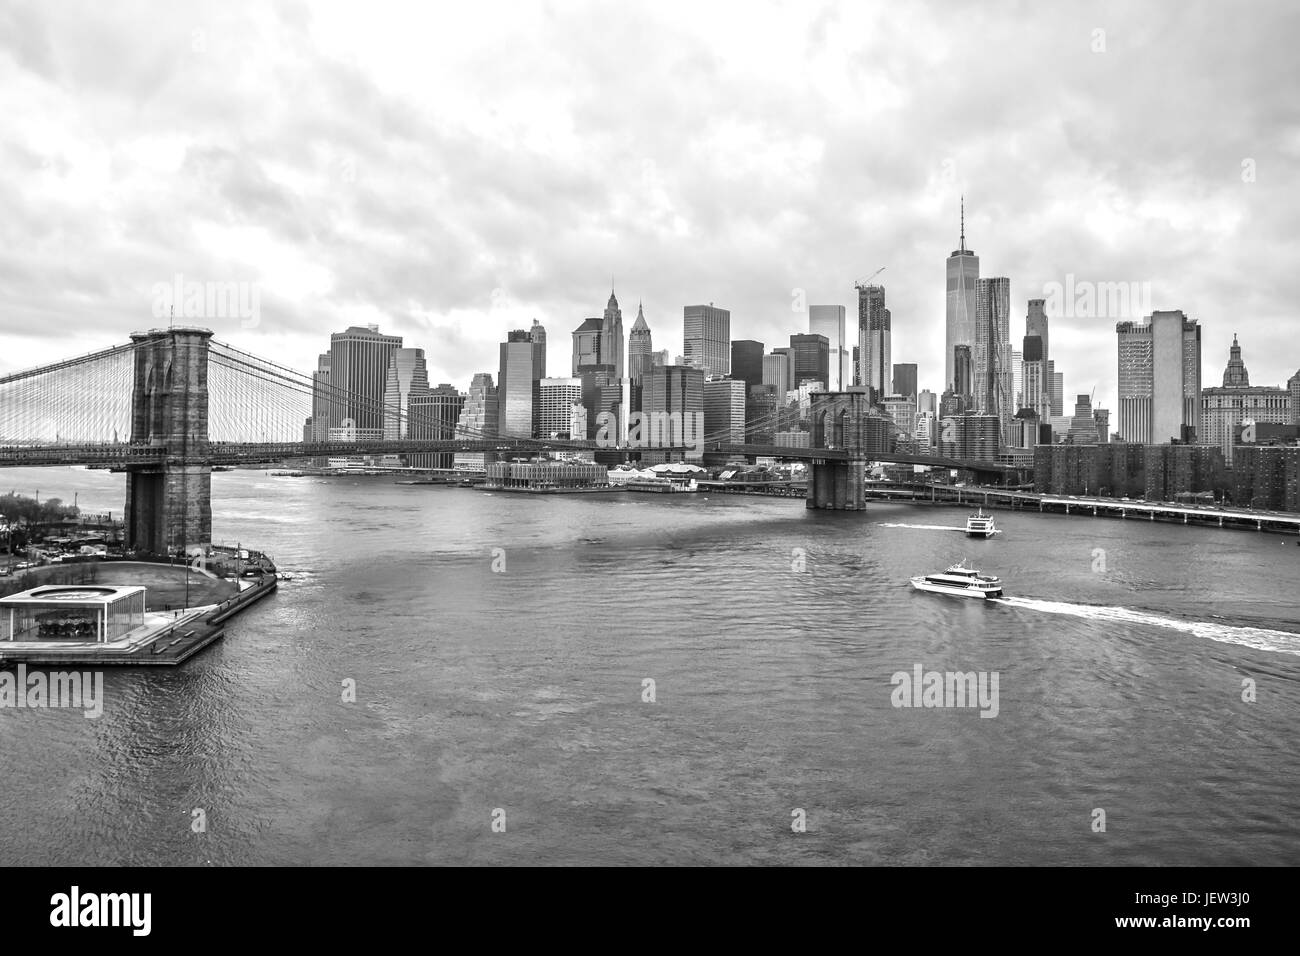 New York Skyline from Manhattan Bridge Black and White Stock Photo